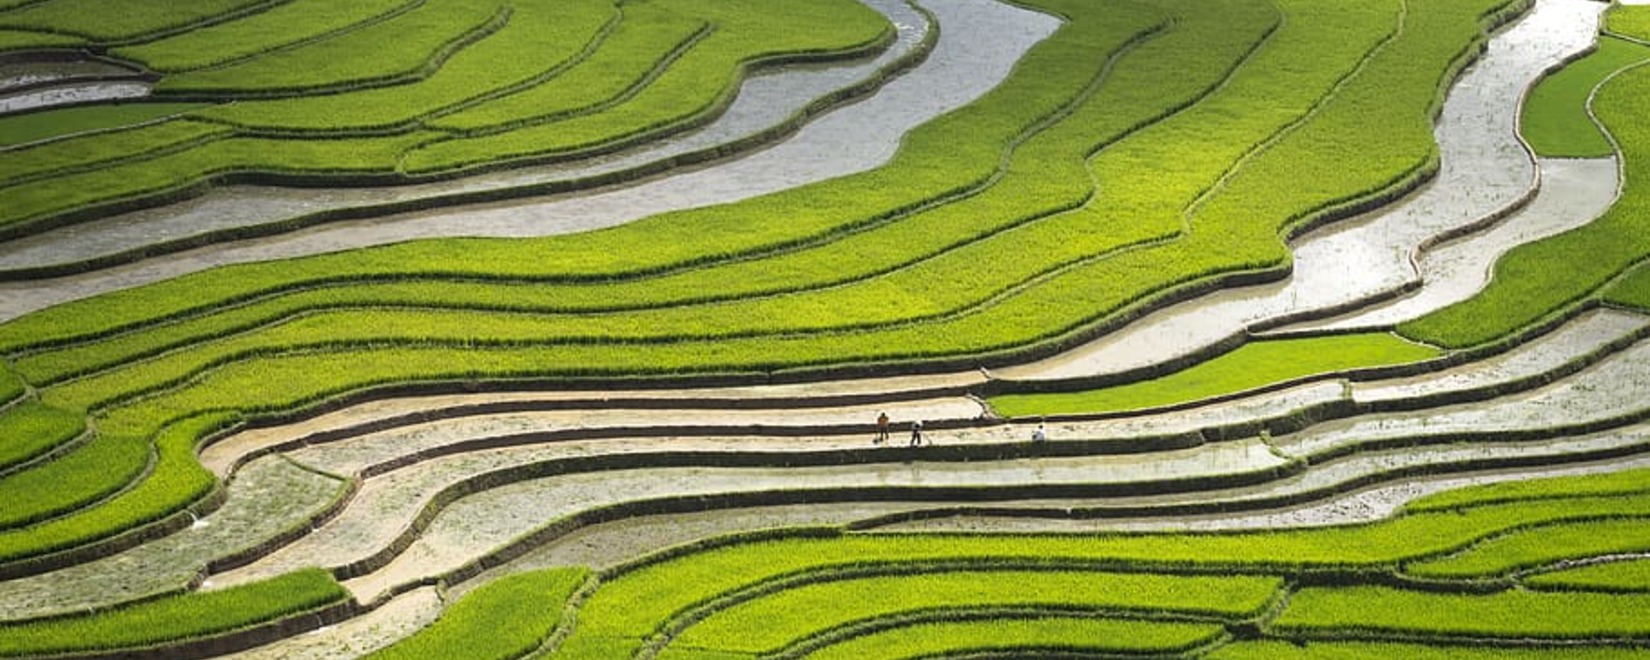 Китай и Индия активно внедряют метод прямого посева риса